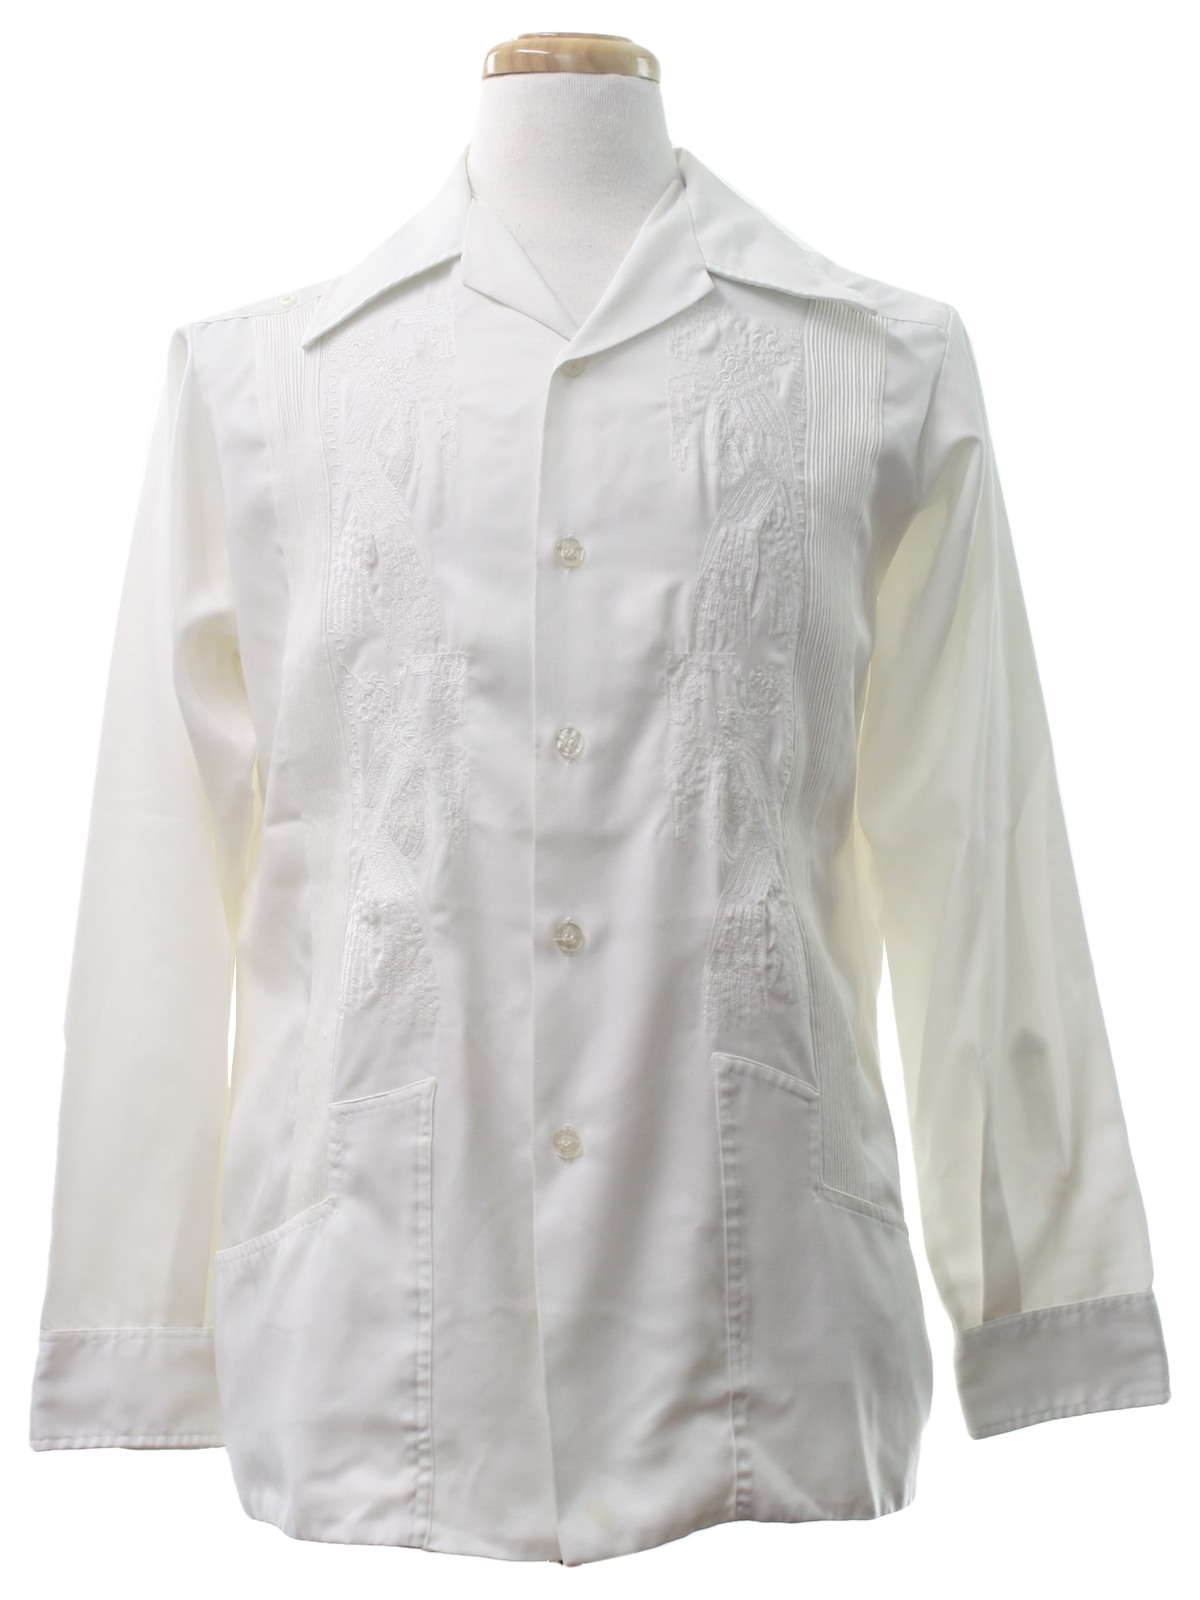 Retro Seventies Guayabera Shirt: Late 70s -Meridana- Mens white ...